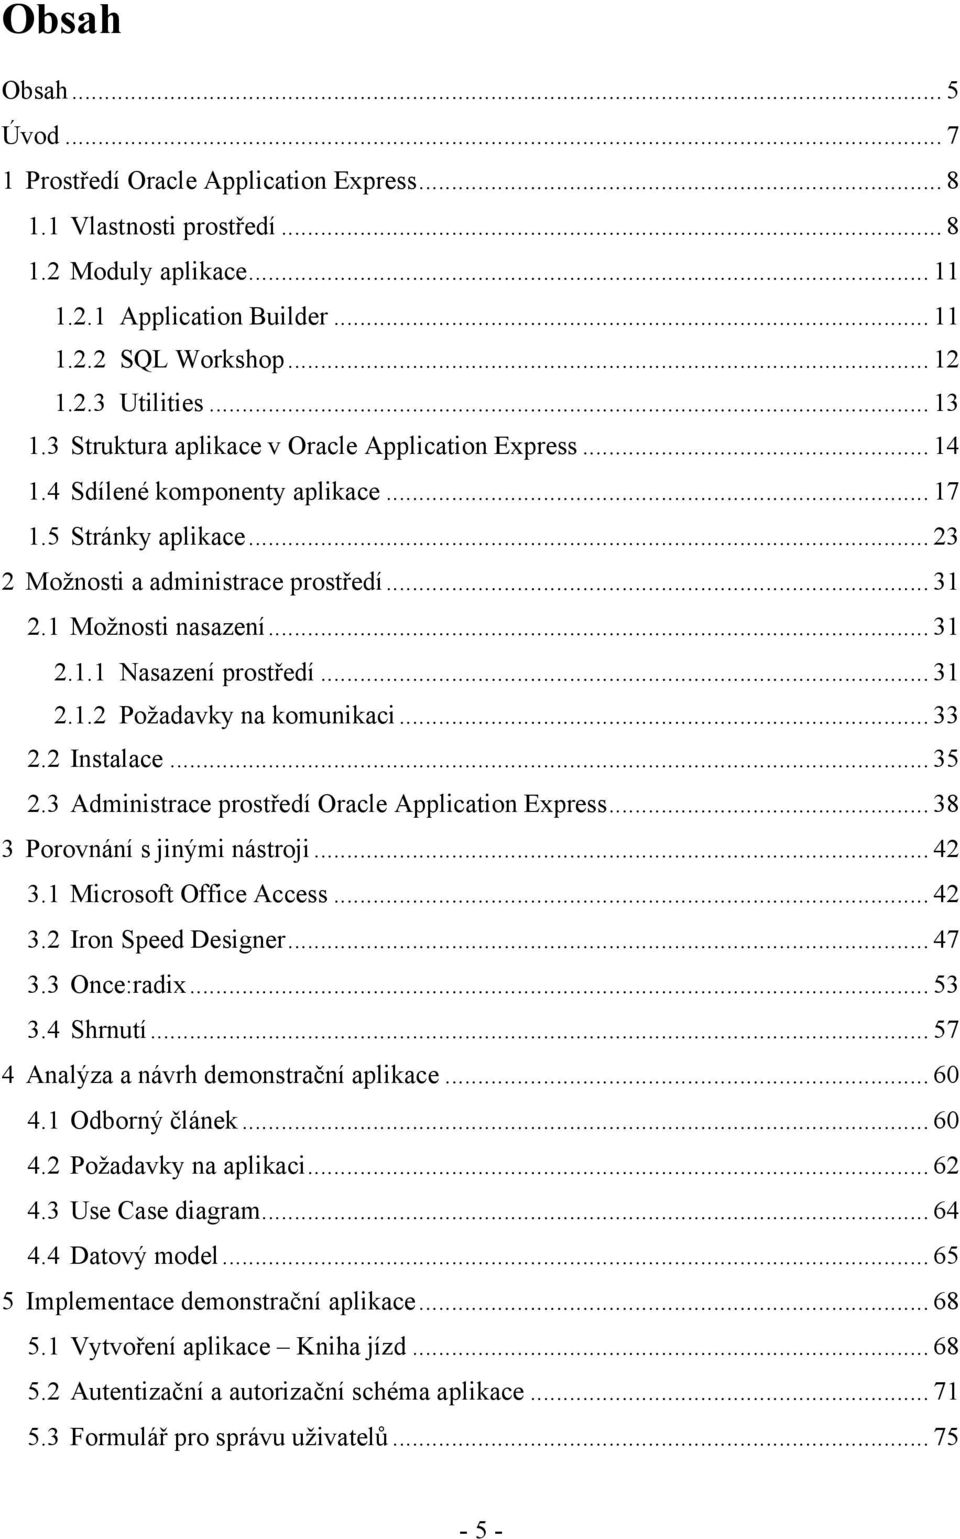 .. 31 2.1.2 Požadavky na komunikaci... 33 2.2 Instalace... 35 2.3 Administrace prostředí Oracle Application Express... 38 3 Porovnání s jinými nástroji... 42 3.1 Microsoft Office Access... 42 3.2 Iron Speed Designer.